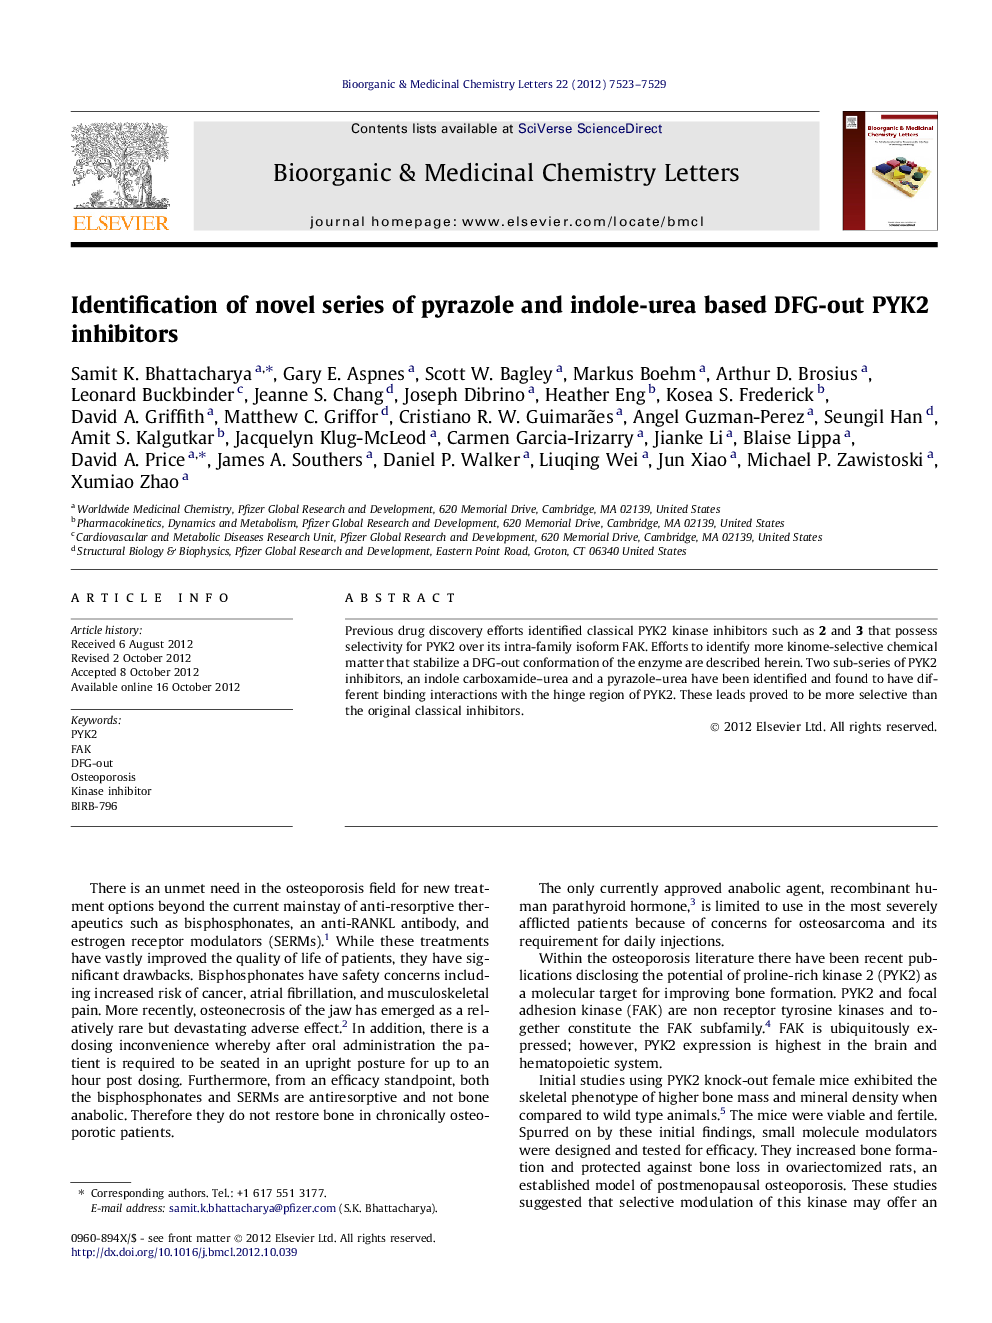 Identification of novel series of pyrazole and indole-urea based DFG-out PYK2 inhibitors